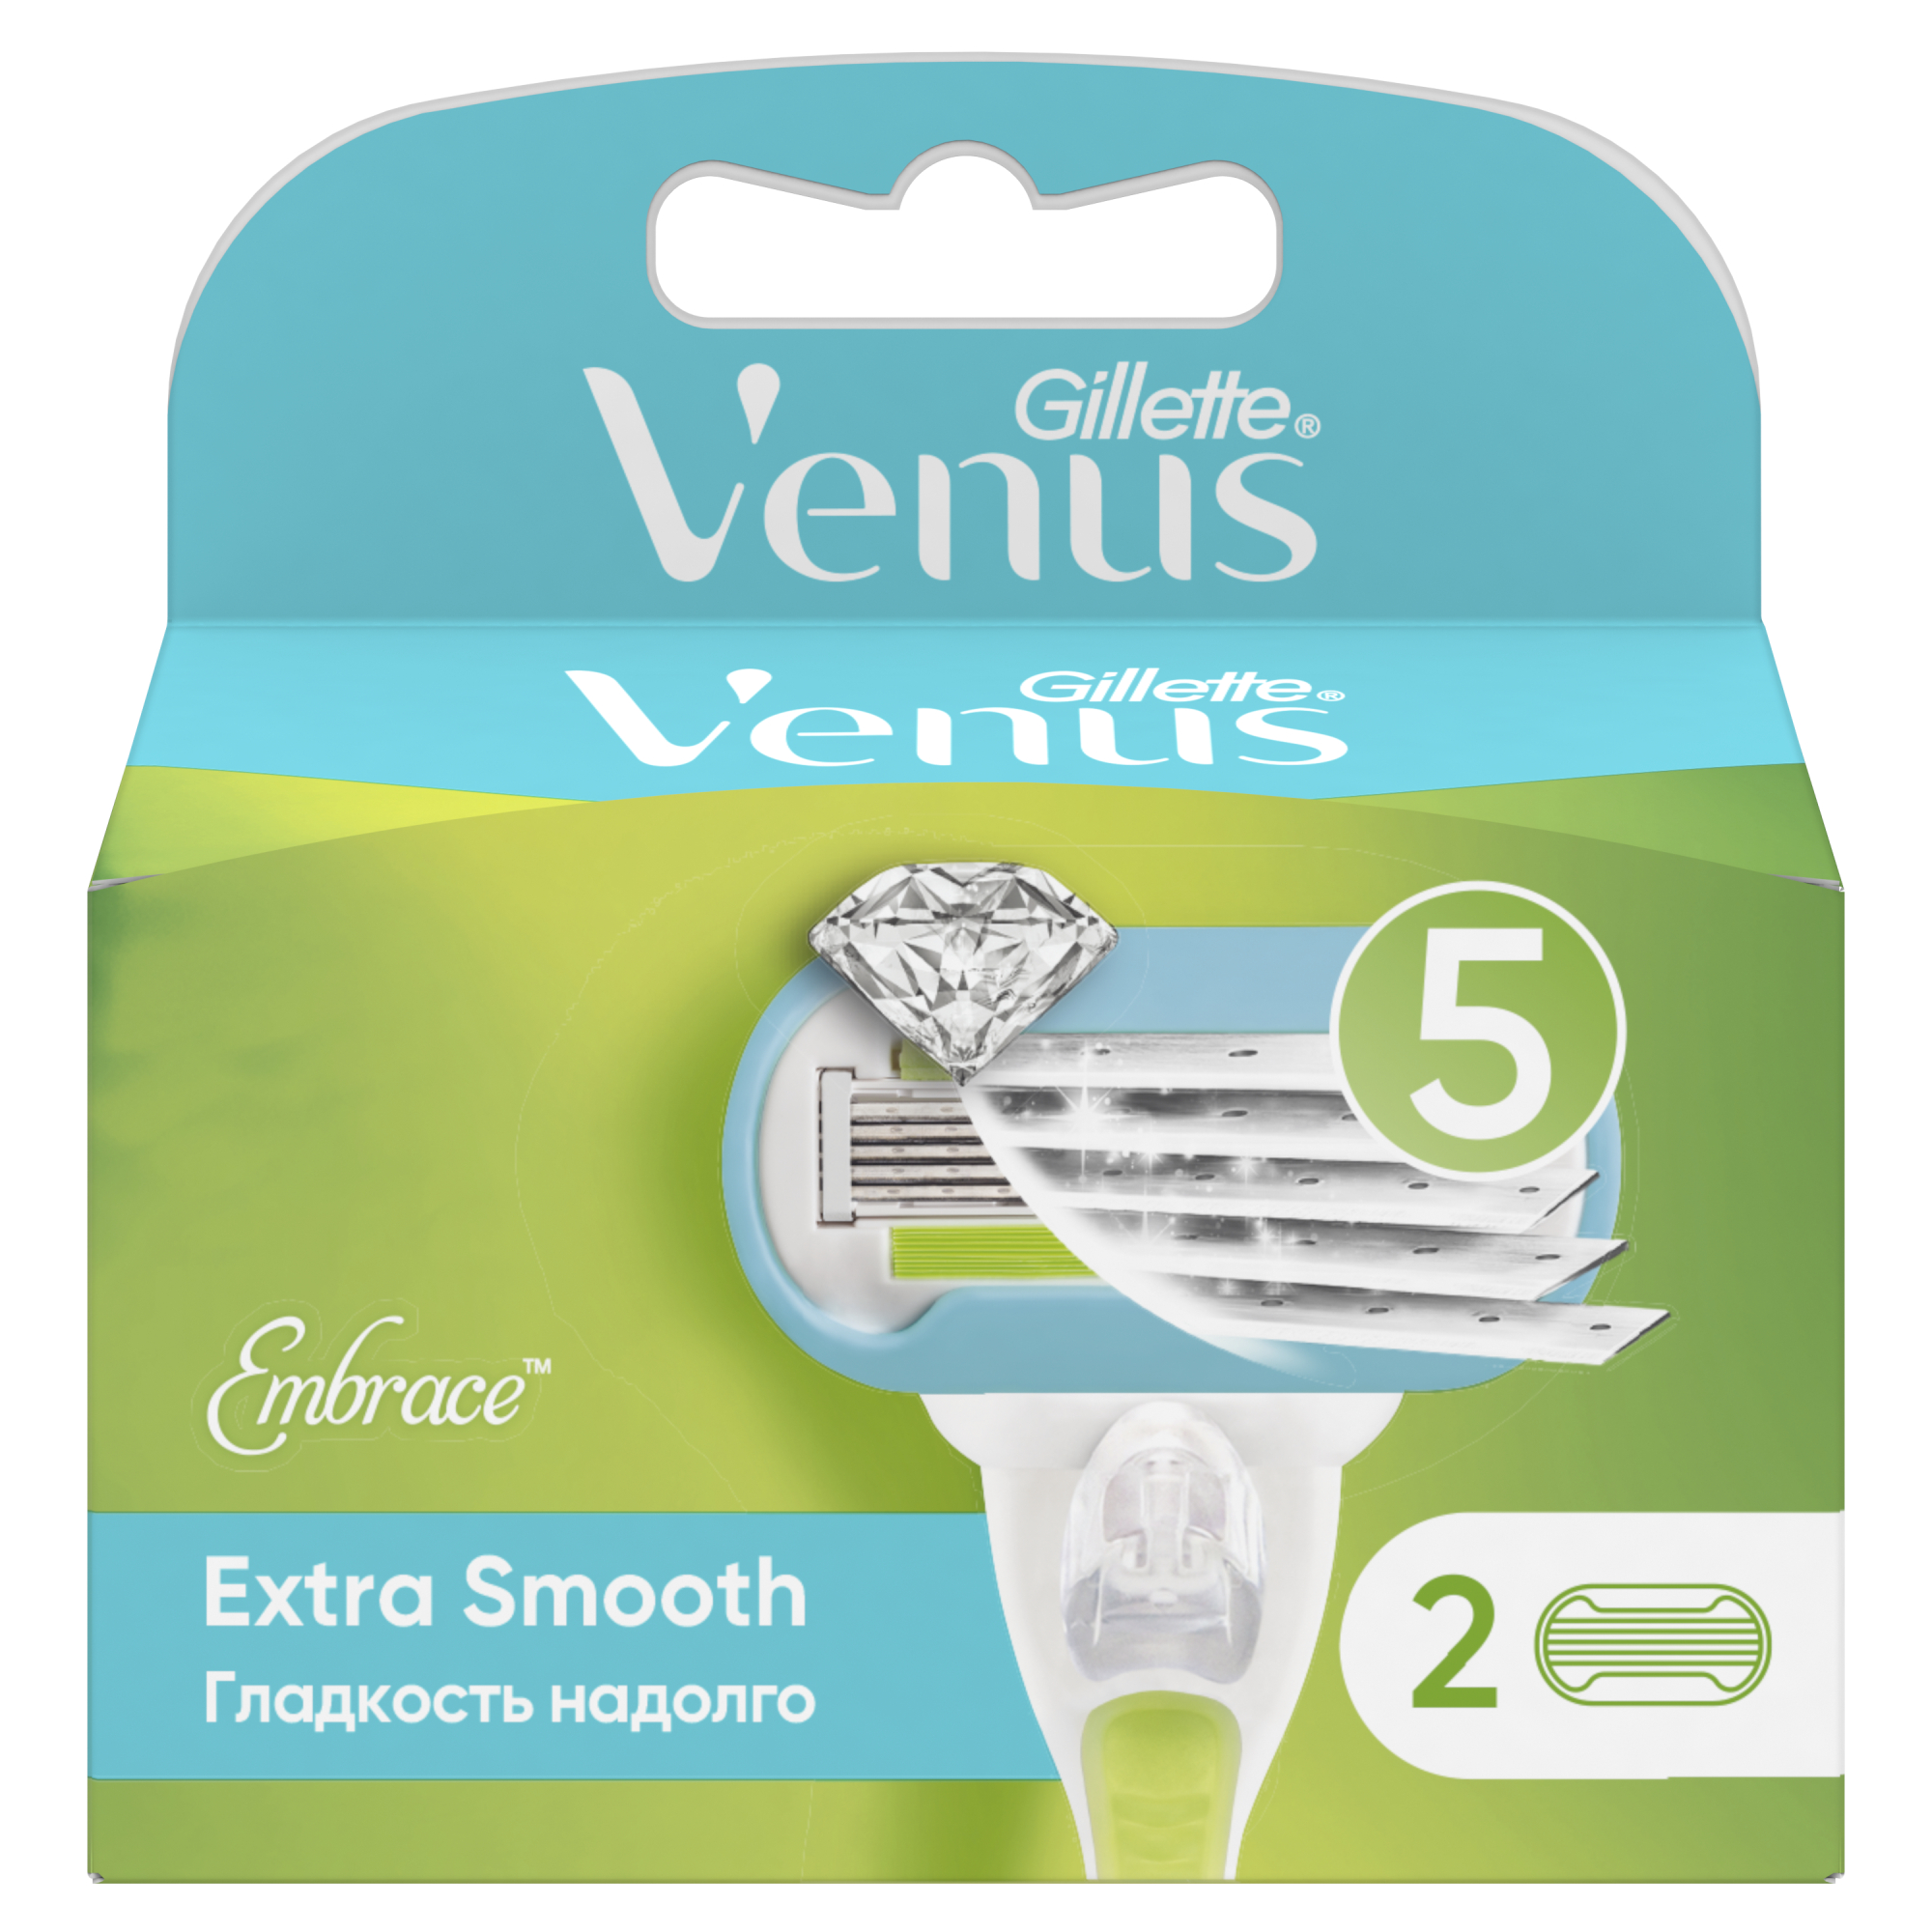 сменные кассеты для бритв venus breeze для женщин 2 шт Сменные кассеты для женской бритвы Venus Extra Smooth, 5 лезвий, 2 шт невероятная гладкость надолго